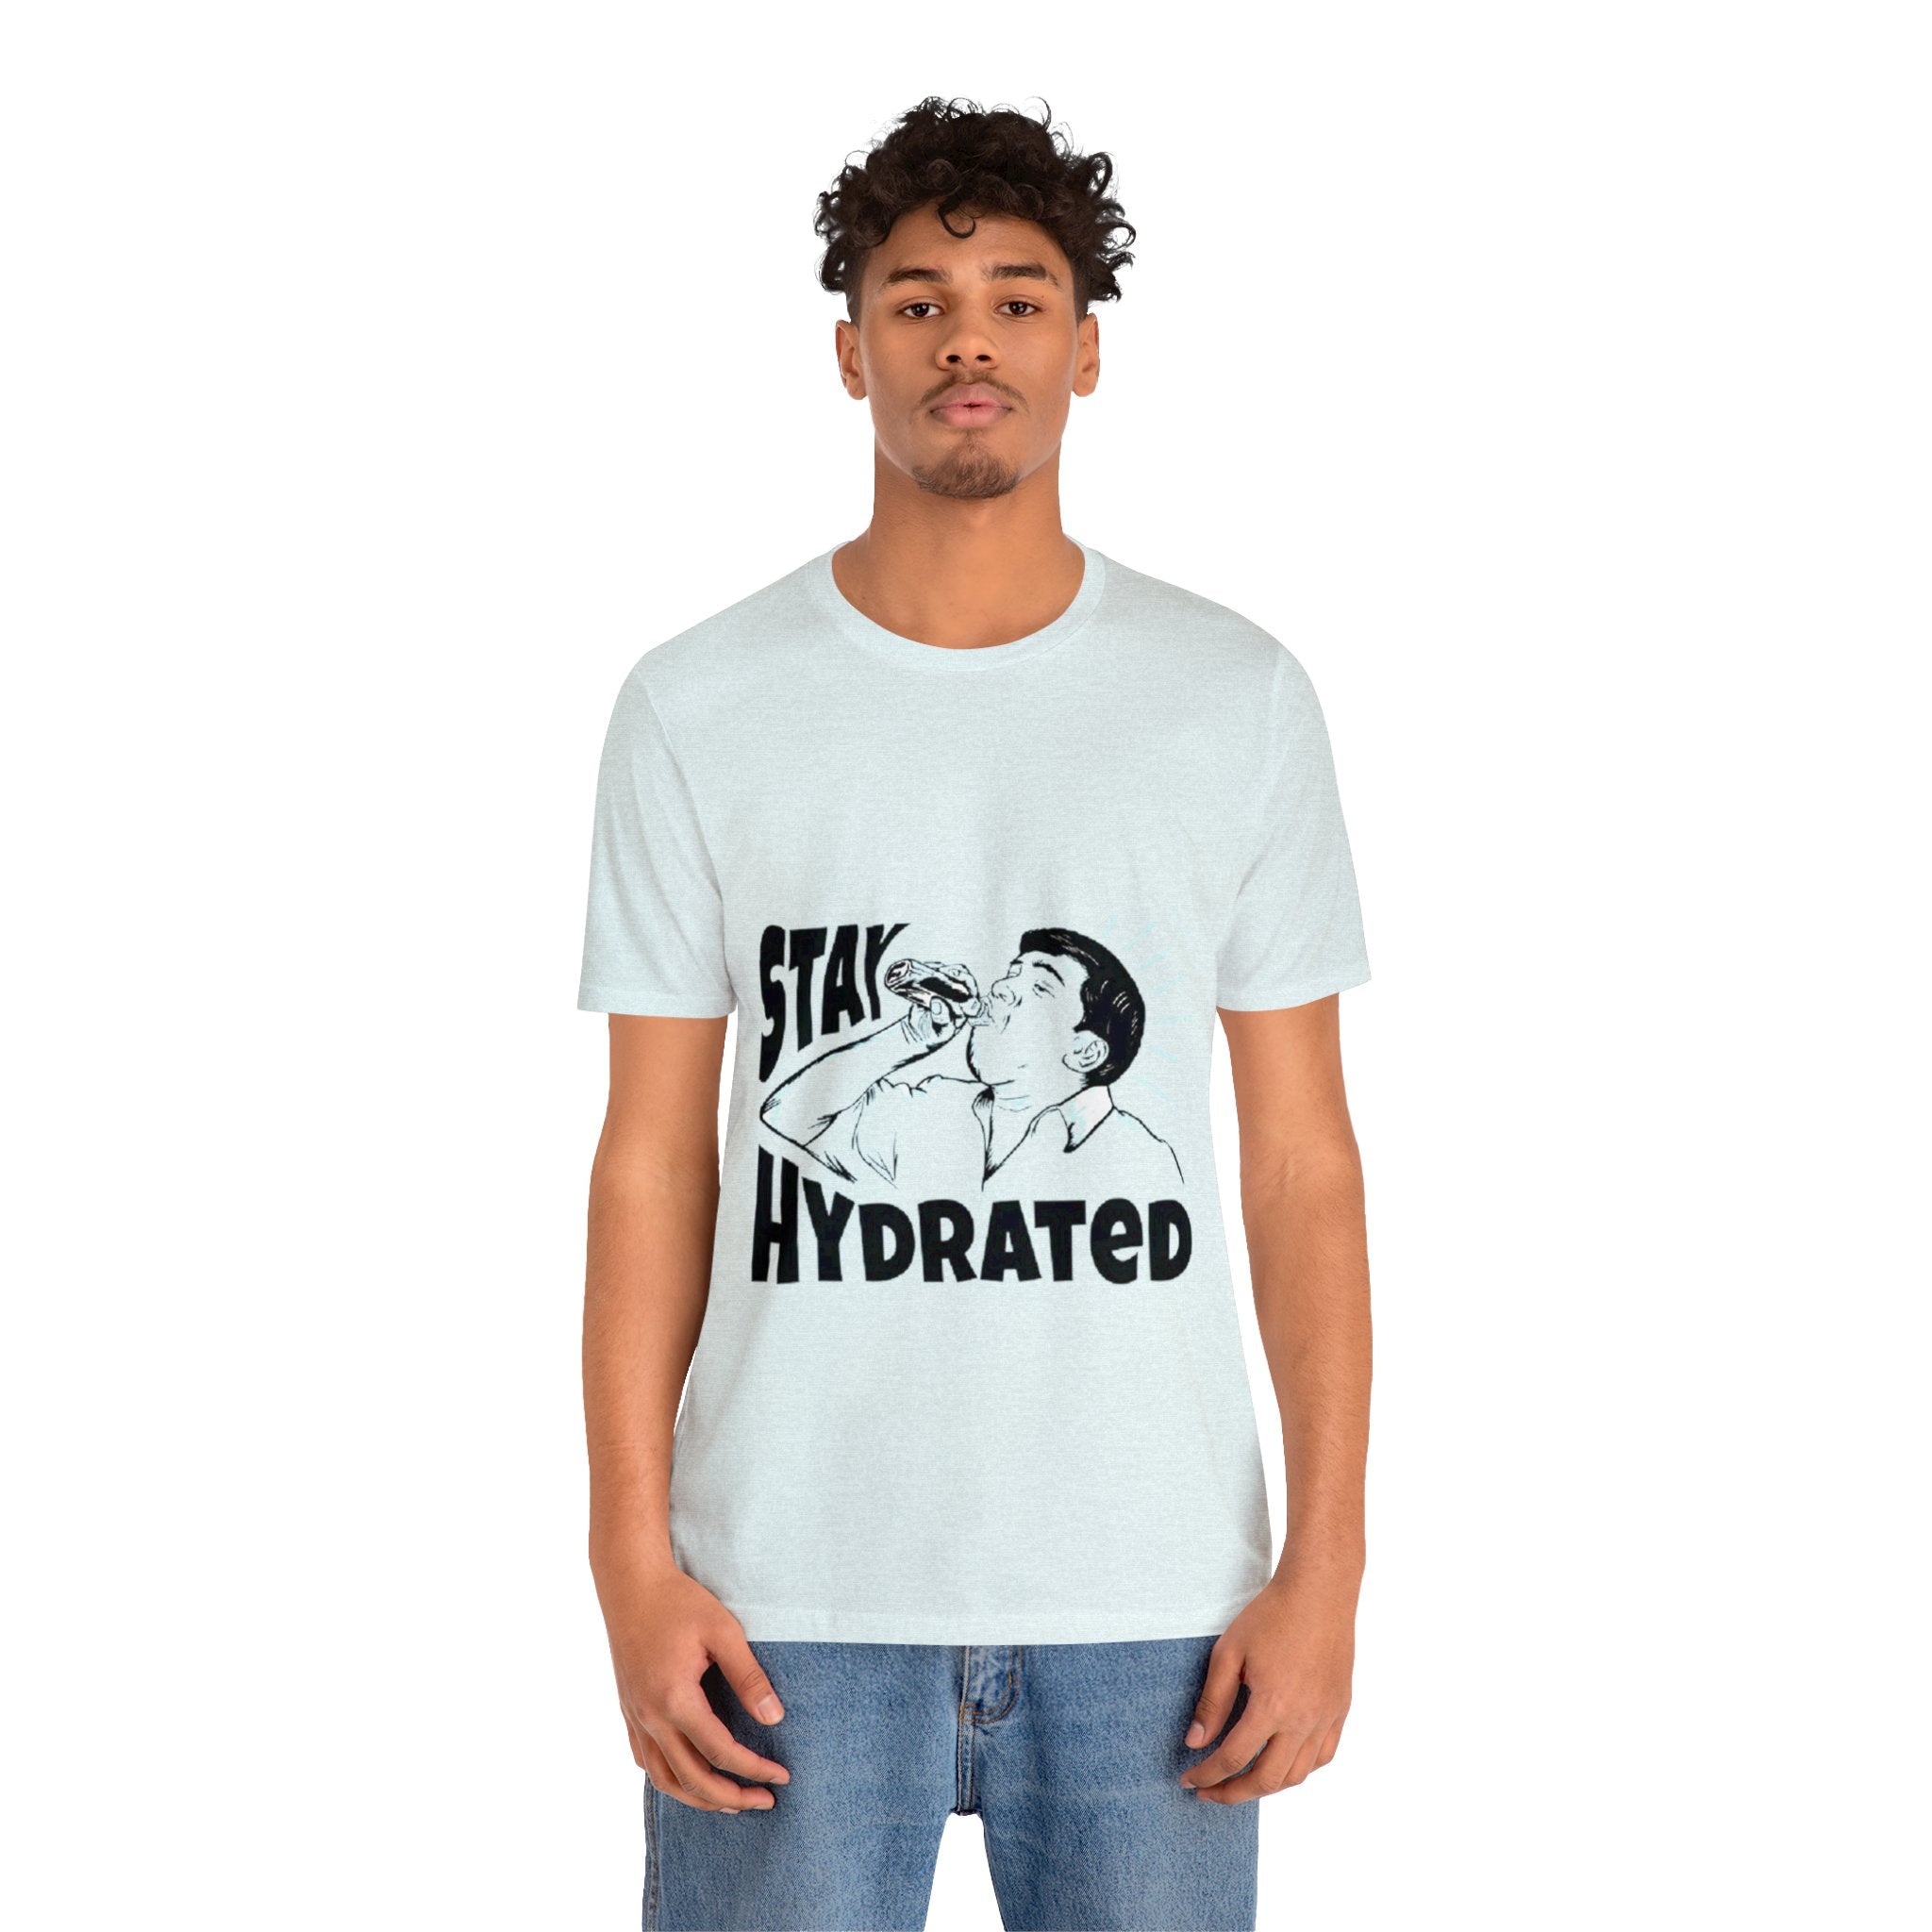 Stay hydrated tshirt